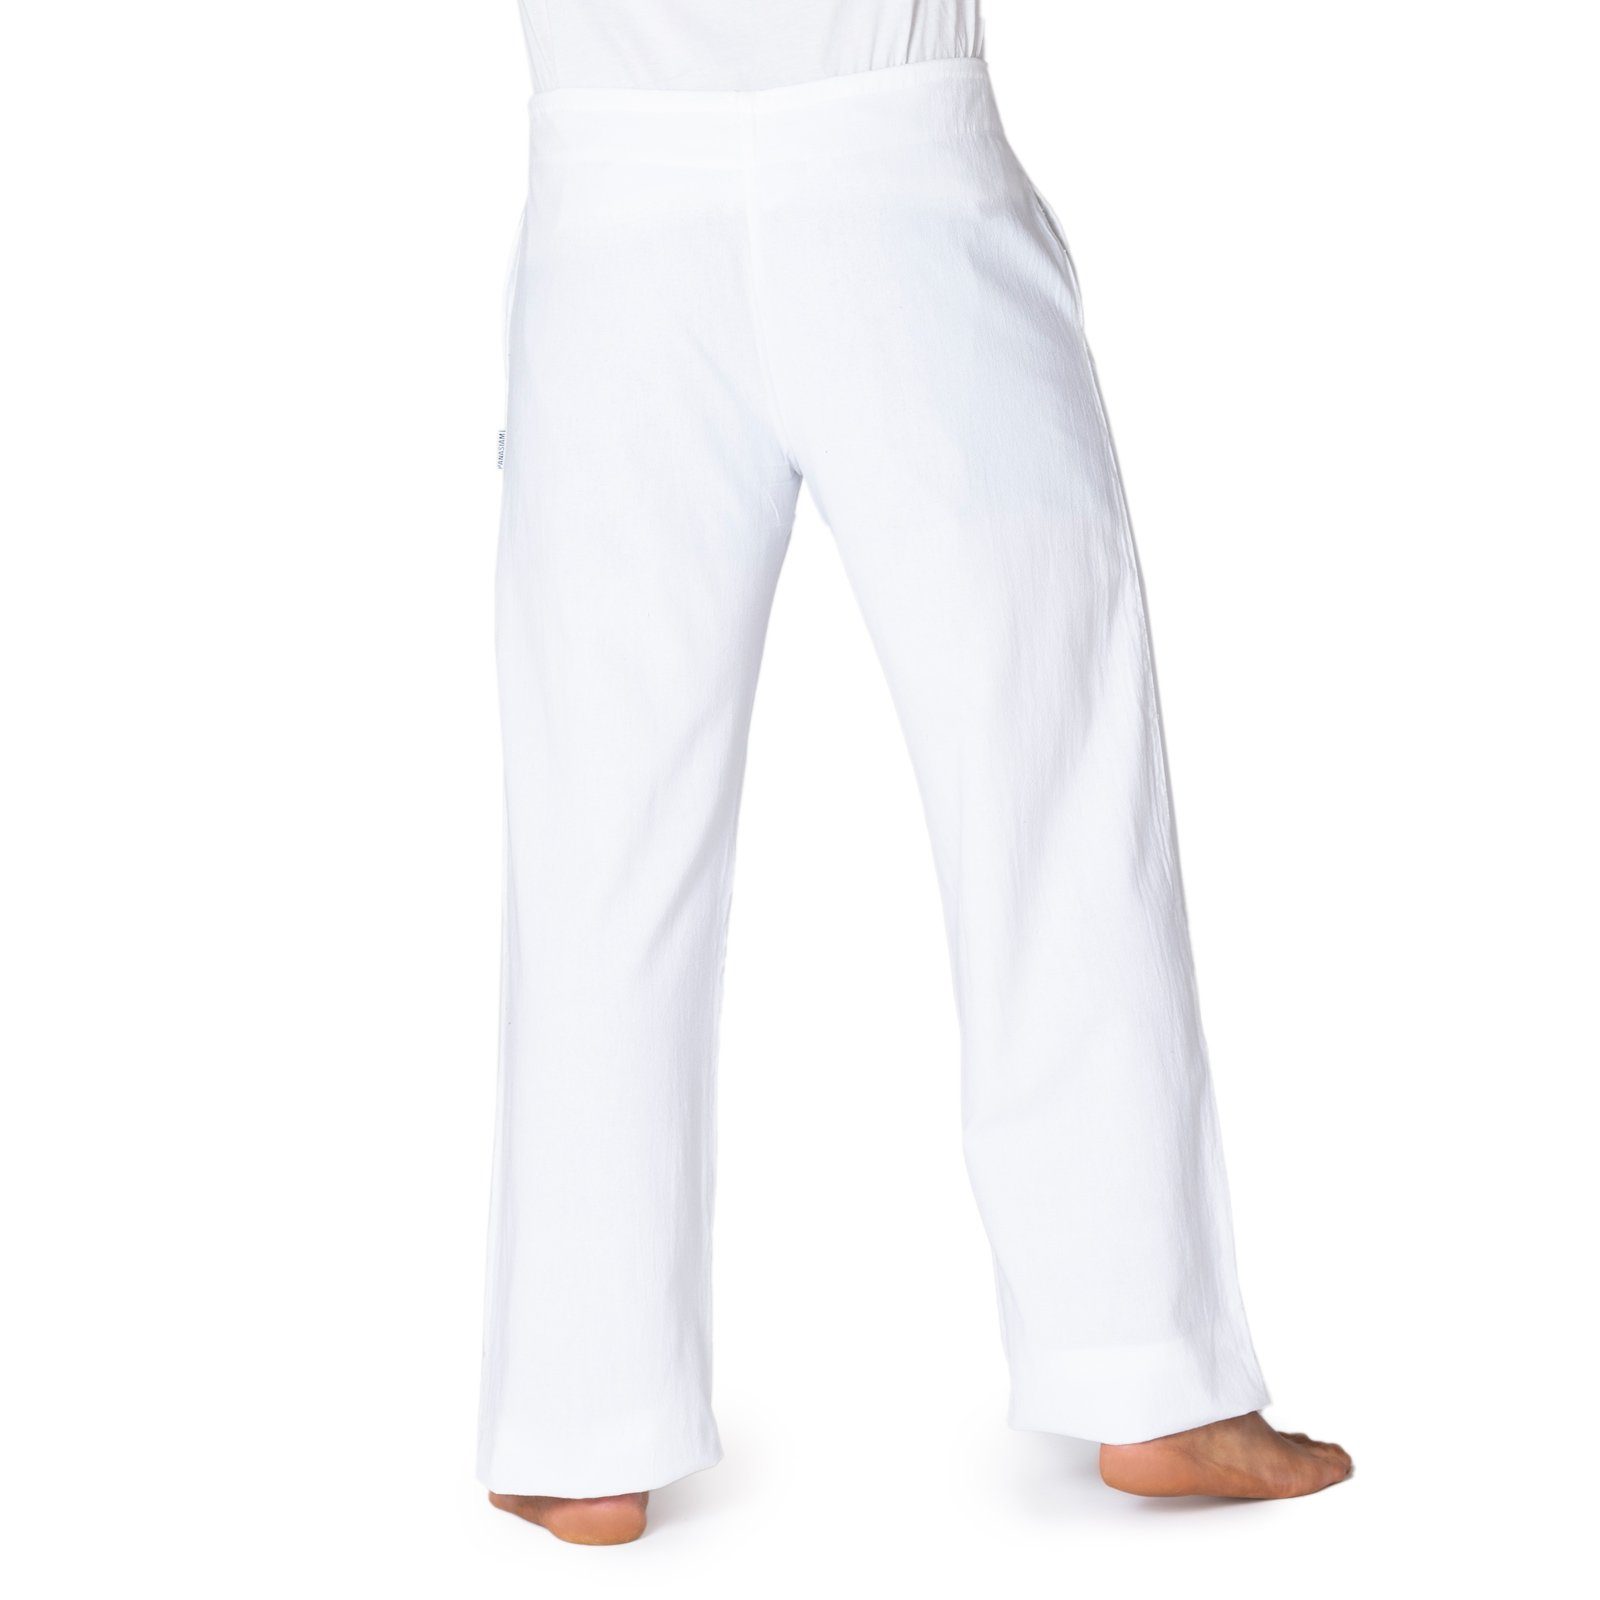 Freizeithose Baumwolle in weiß PANASIAM Relaxhose mit aus großer Bequeme und feiner Wellnesshose Unisex Stoffhose Farbauswahl Taschen Damen für Herren